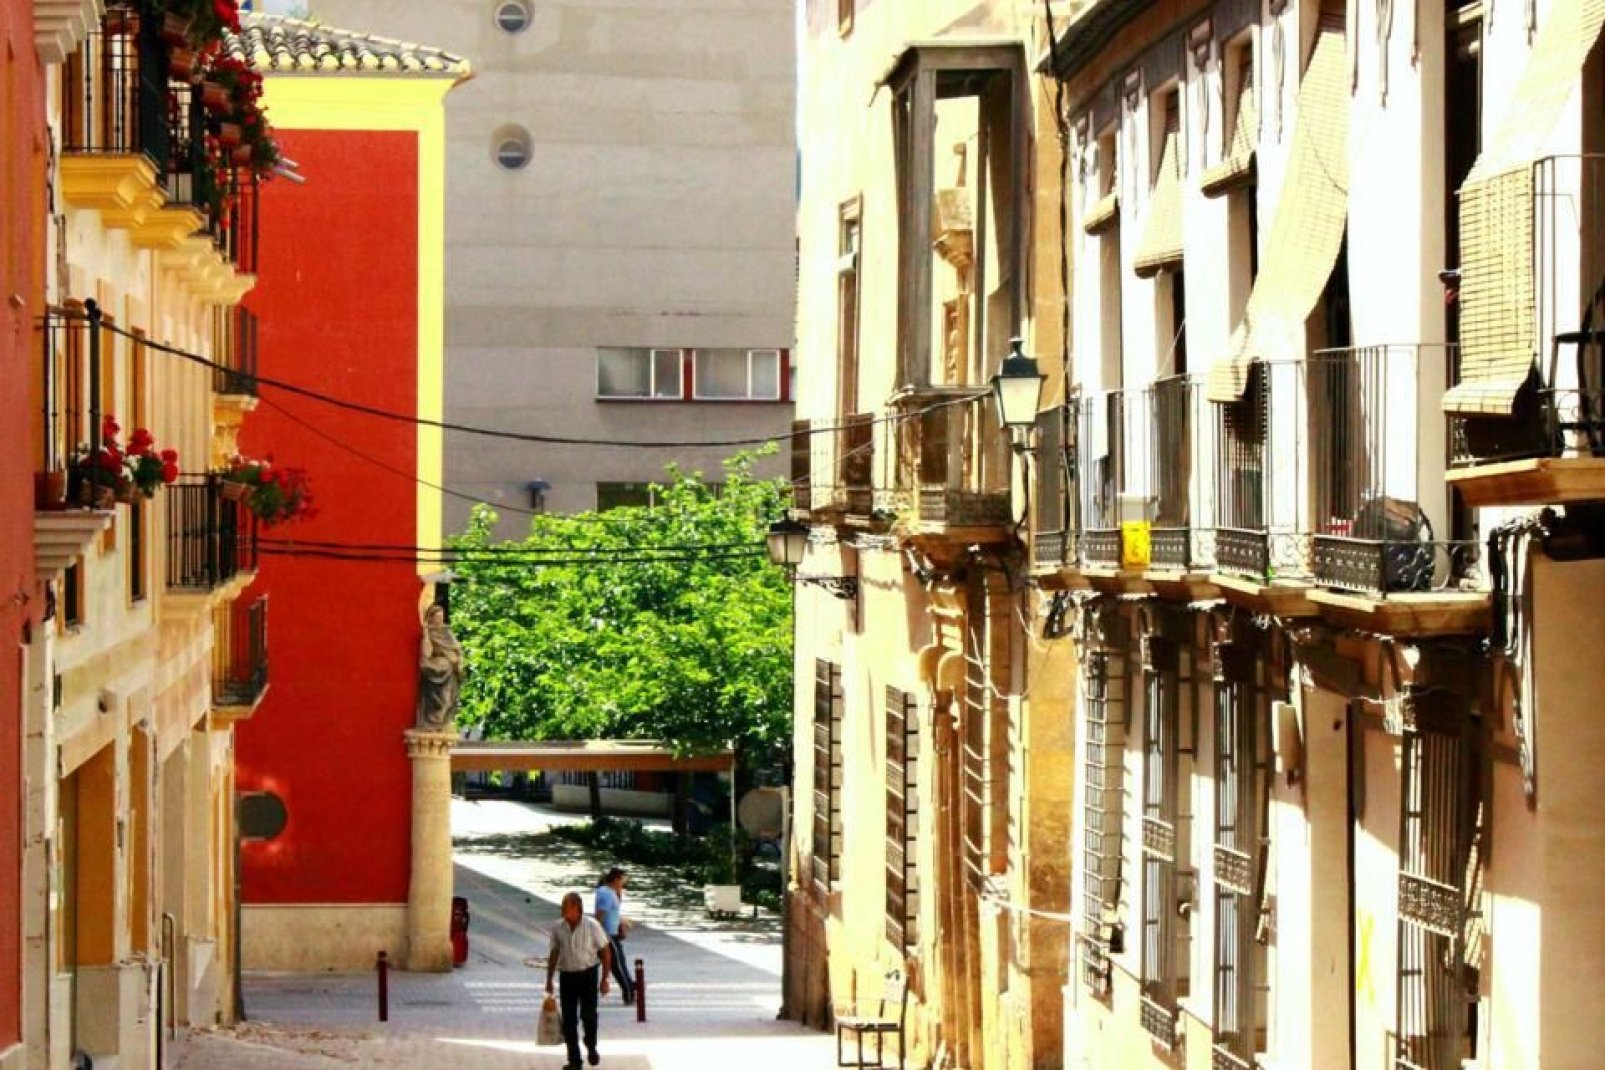 La ville de Lorca fait partie de la communauté de Murcie, et se situe à 58 kilomètres au sud-ouest de la ville de Murcia.